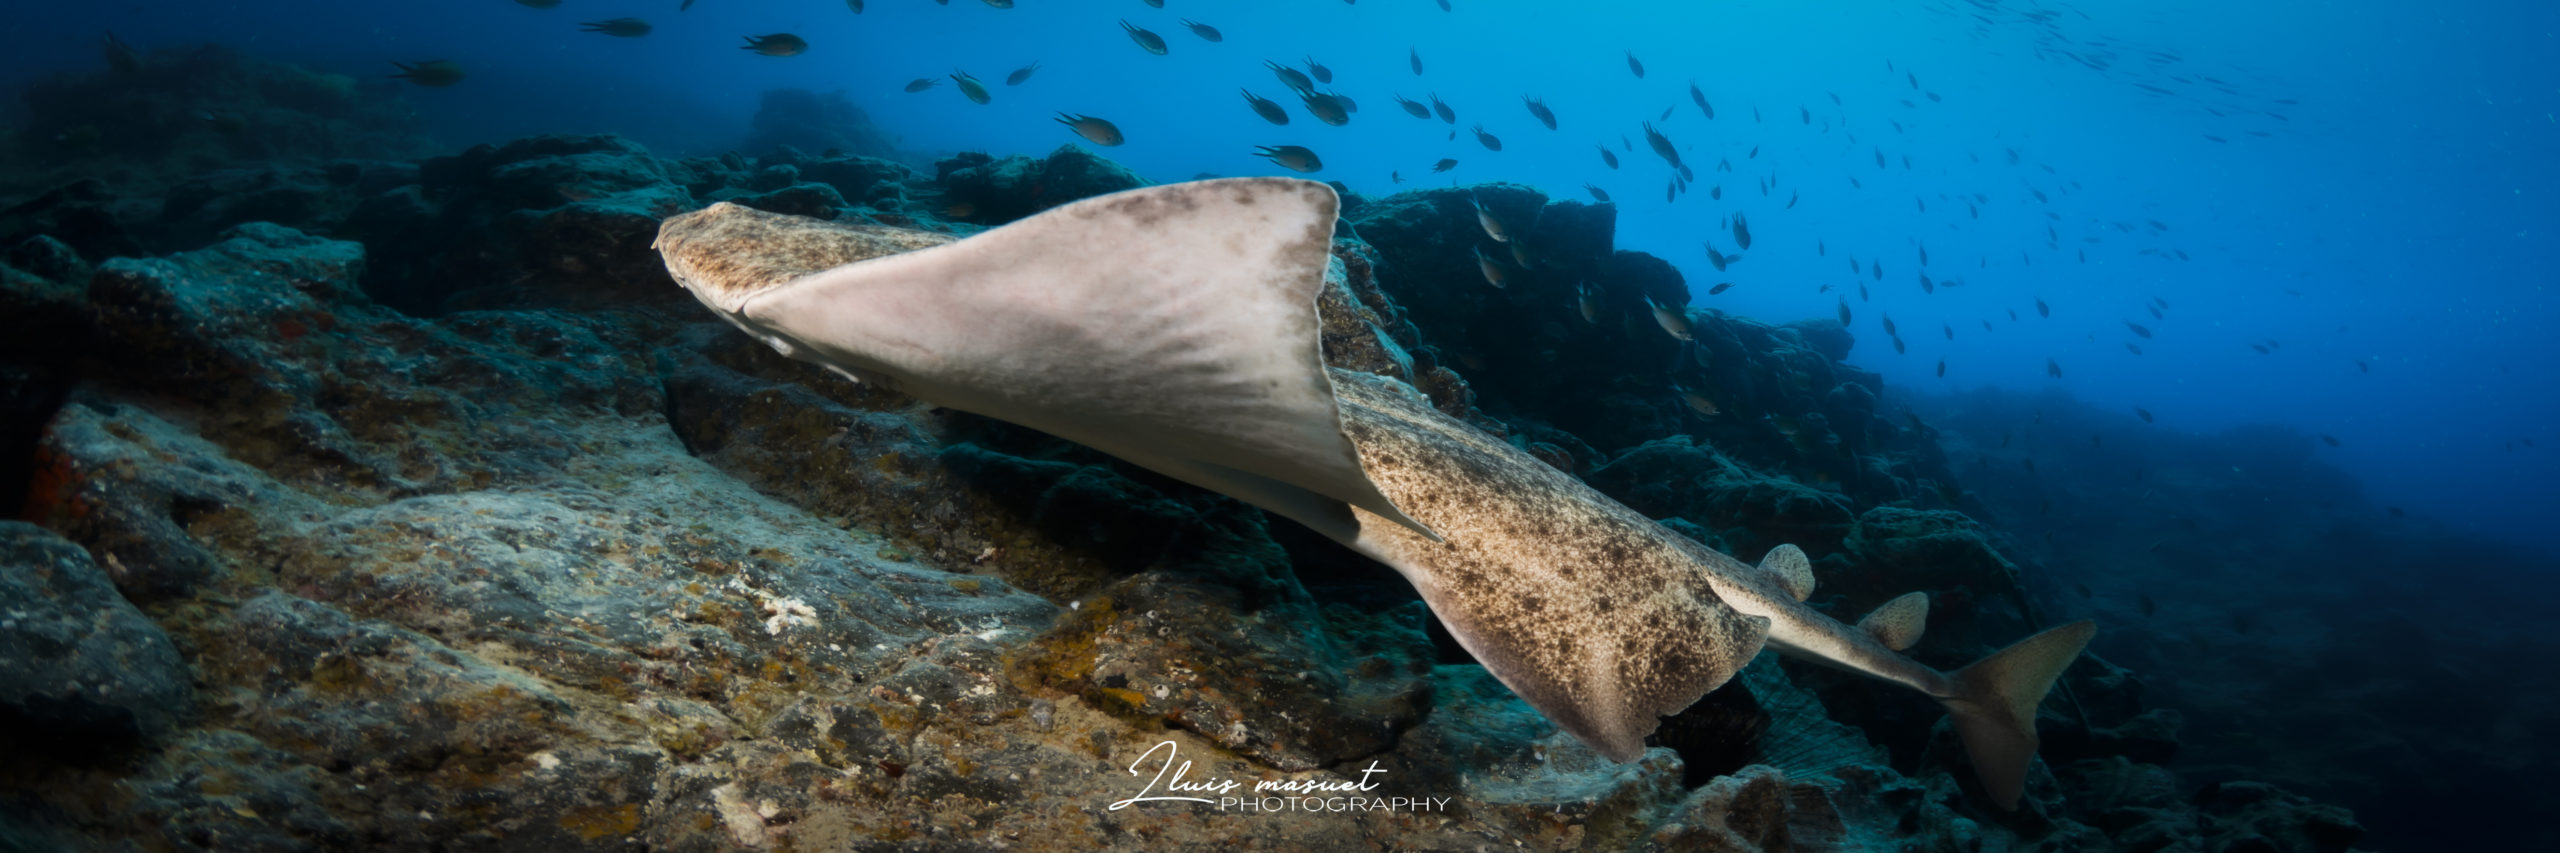 Underwater life in Lanzarote